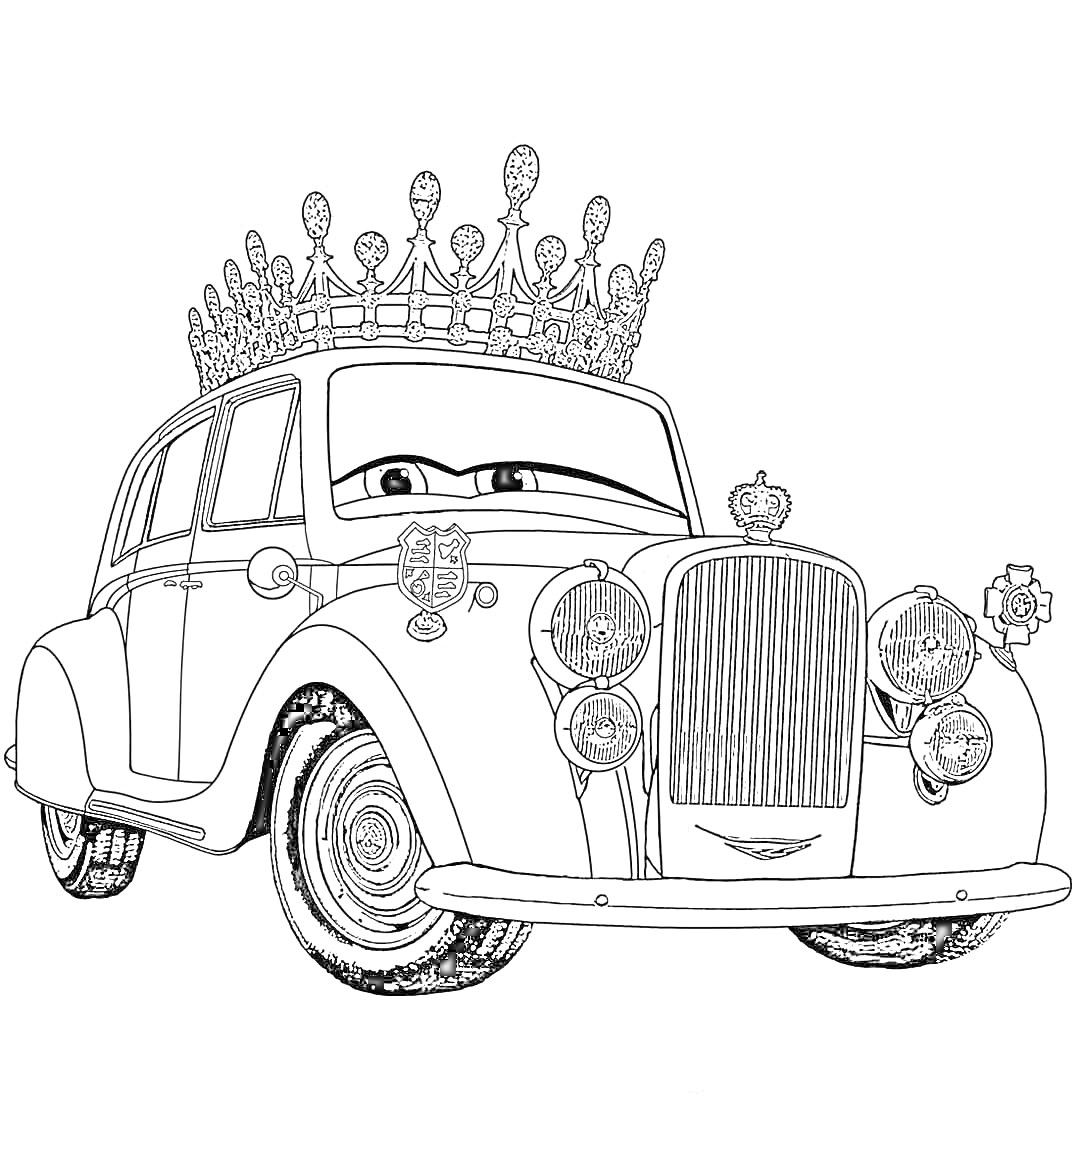 Раскраска Машина с короной и глазами, большое ветровое стекло, классический автомобиль с деталями и эмблемами